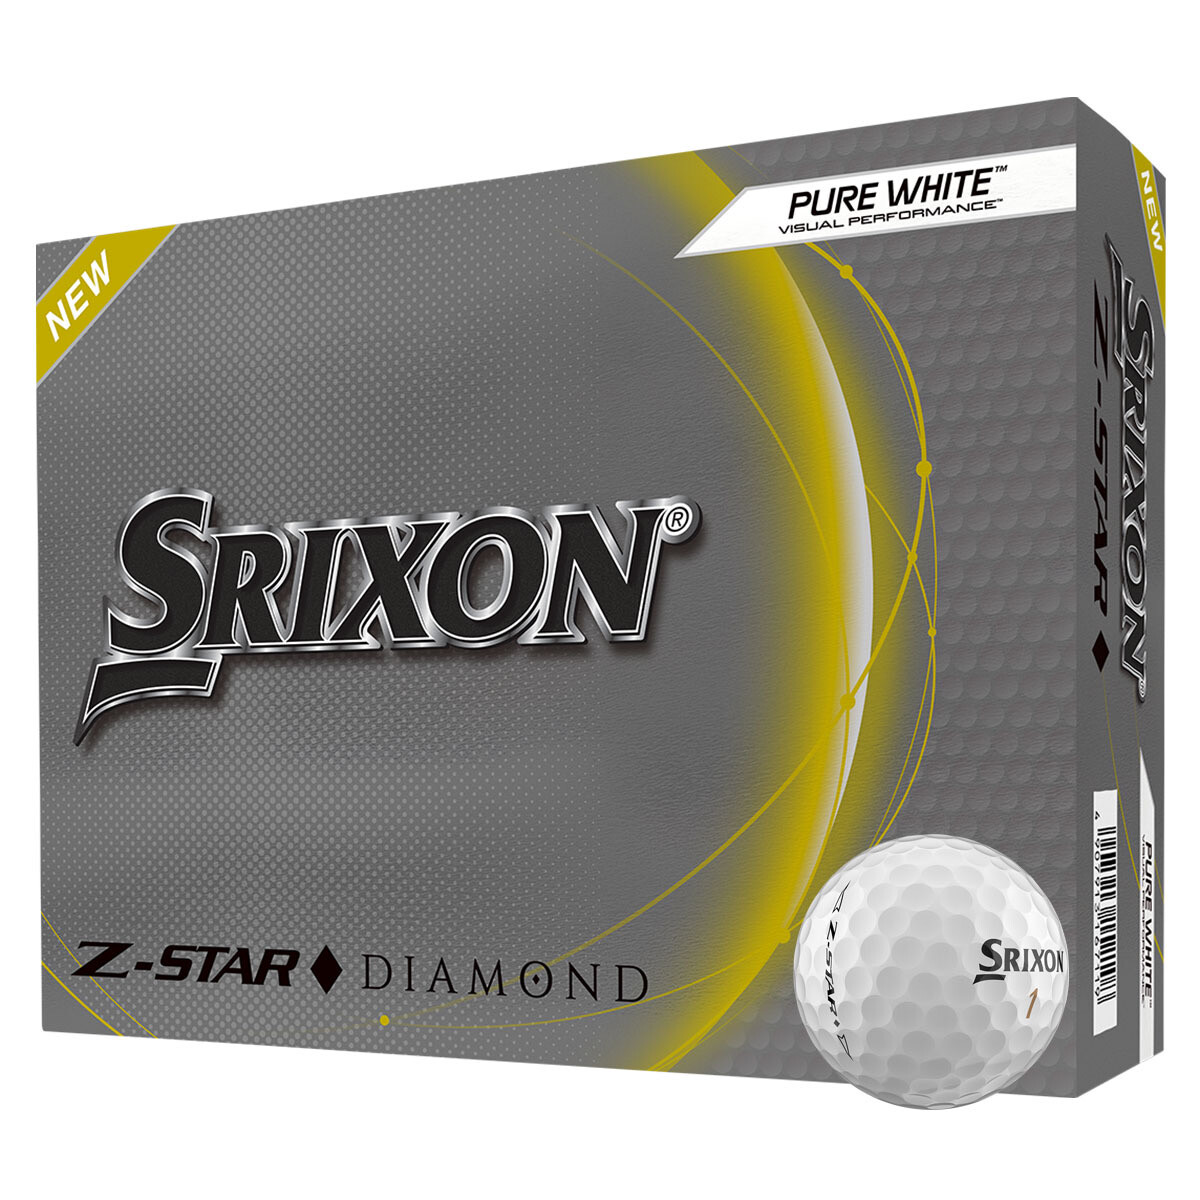 Srixon Z Star Diamond White 4 For 3 Dozen